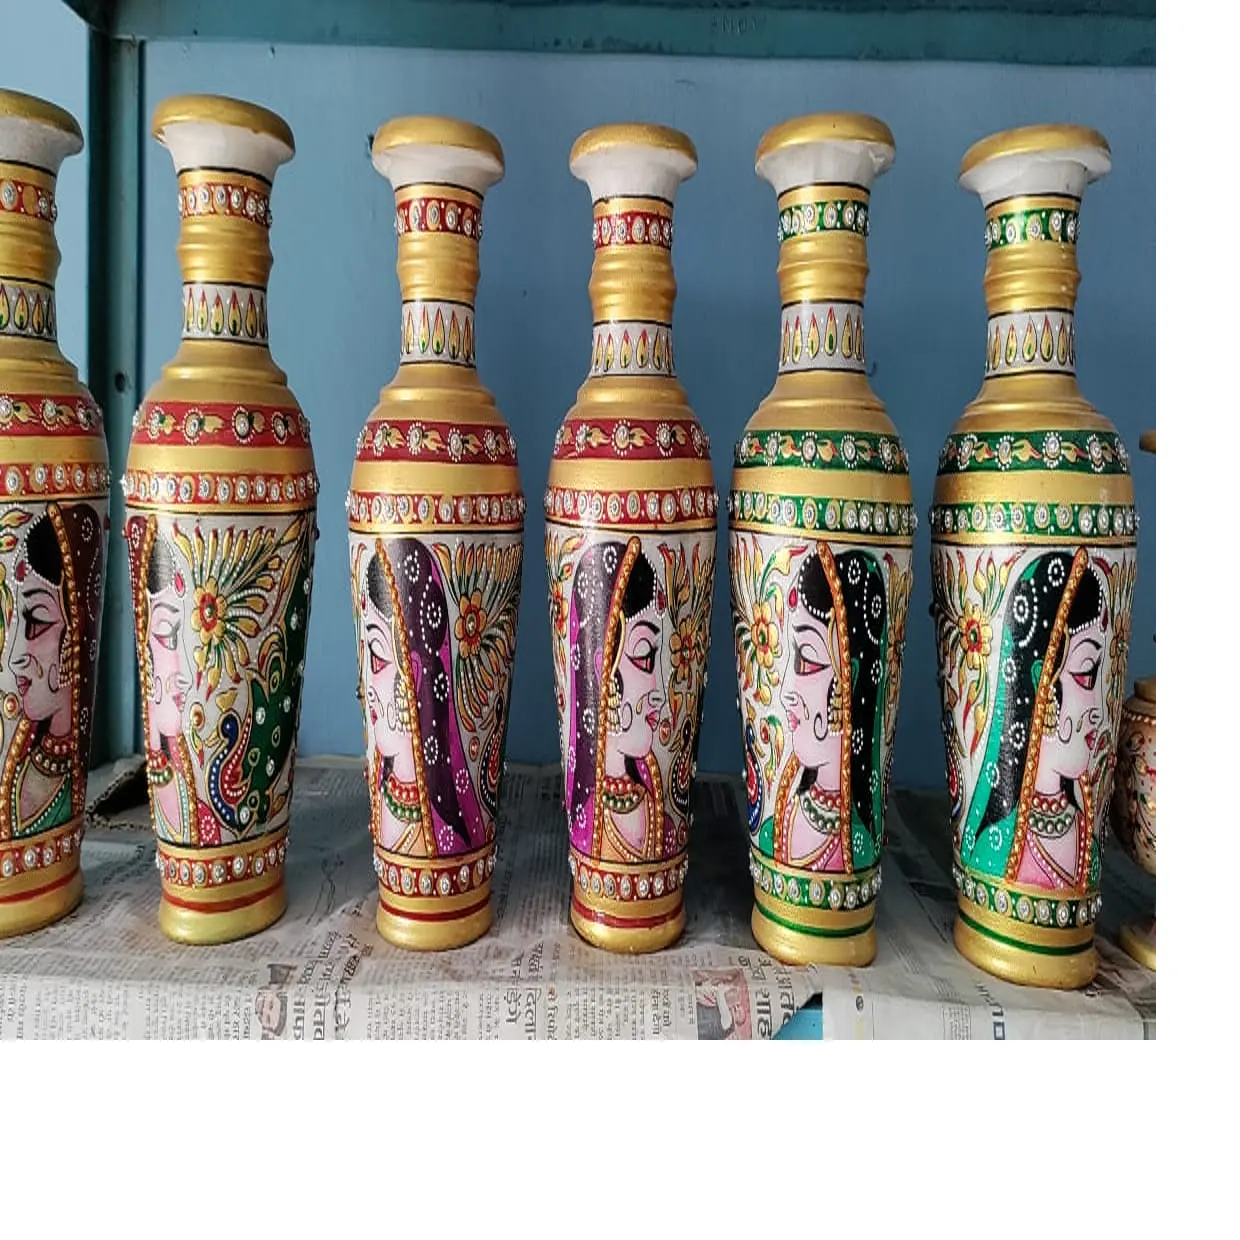 Mármore artesanal personalizado vasos de flores decorativas em temas pintura indiana embelezado com pedras para revenda por lojas de decoração